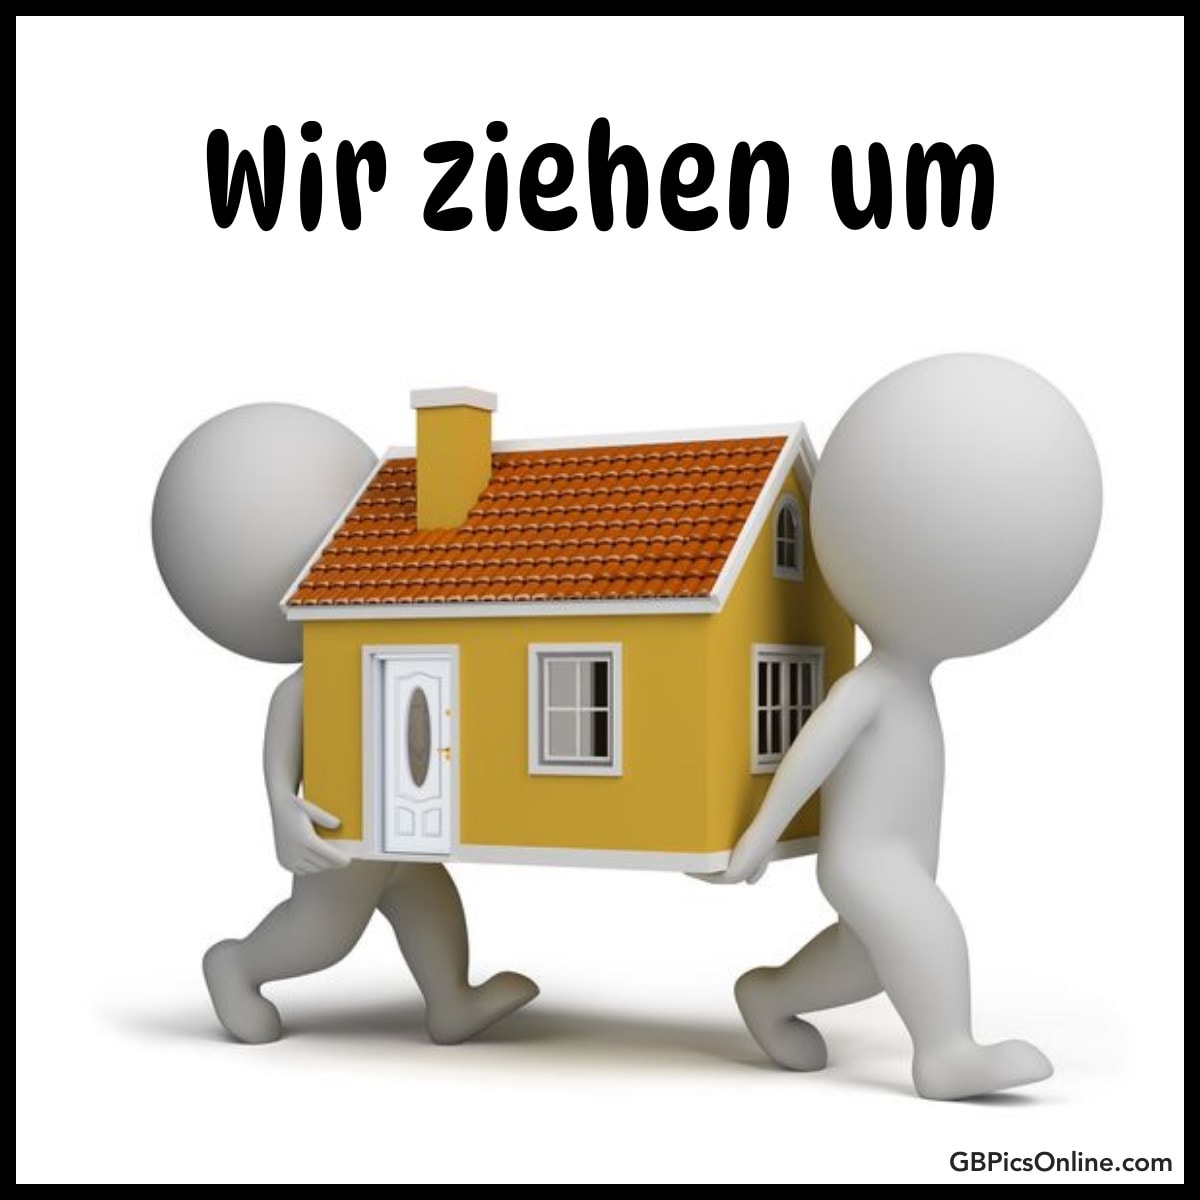 Zwei Figuren tragen ein kleines Haus mit dem Text „Wir ziehen um“ oben